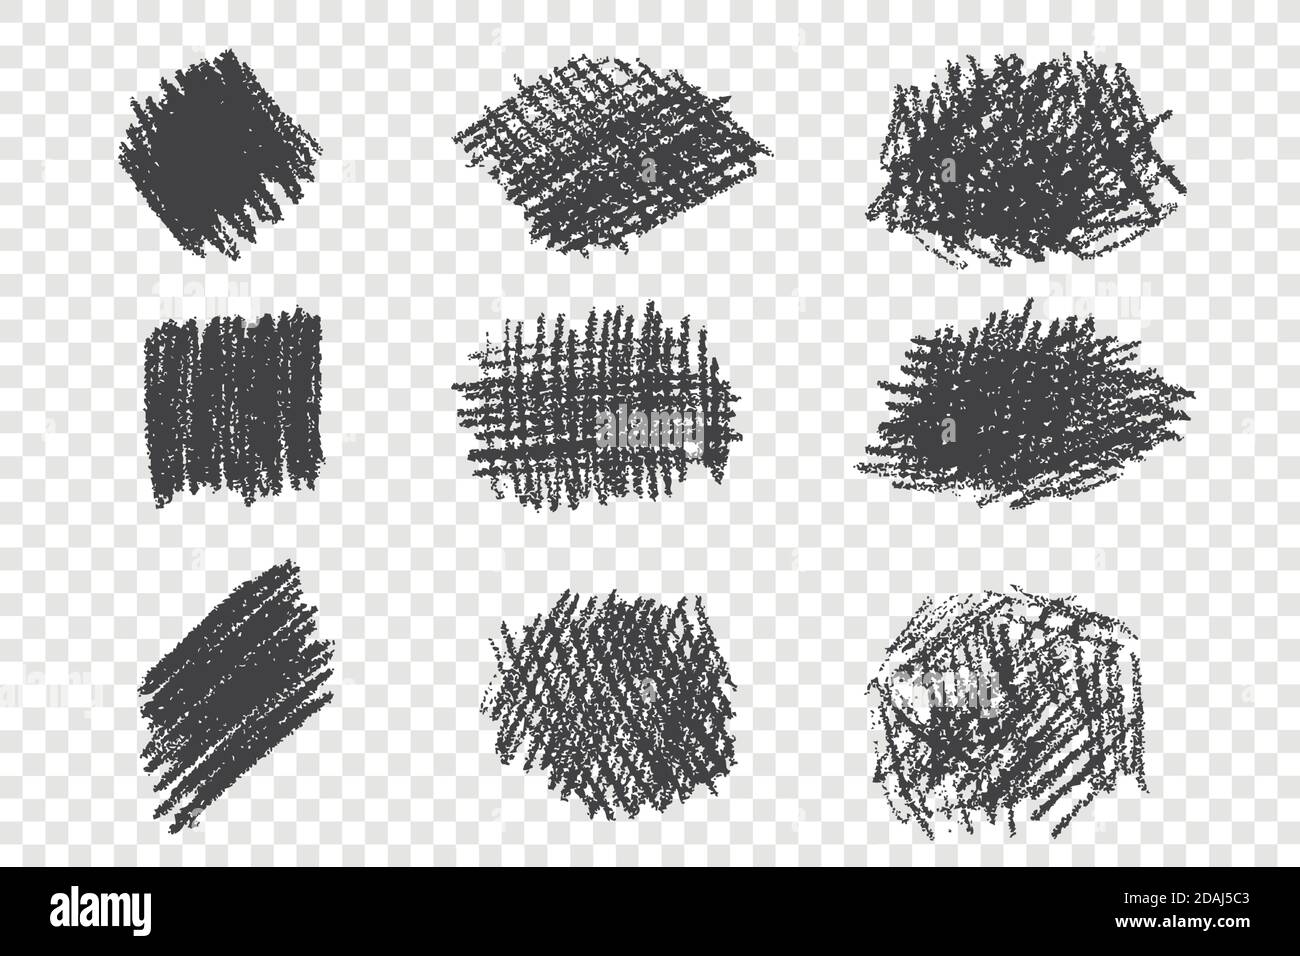 Arten von verschiedenen Stift Schraffur handgezeichneten Satz  Stock-Vektorgrafik - Alamy